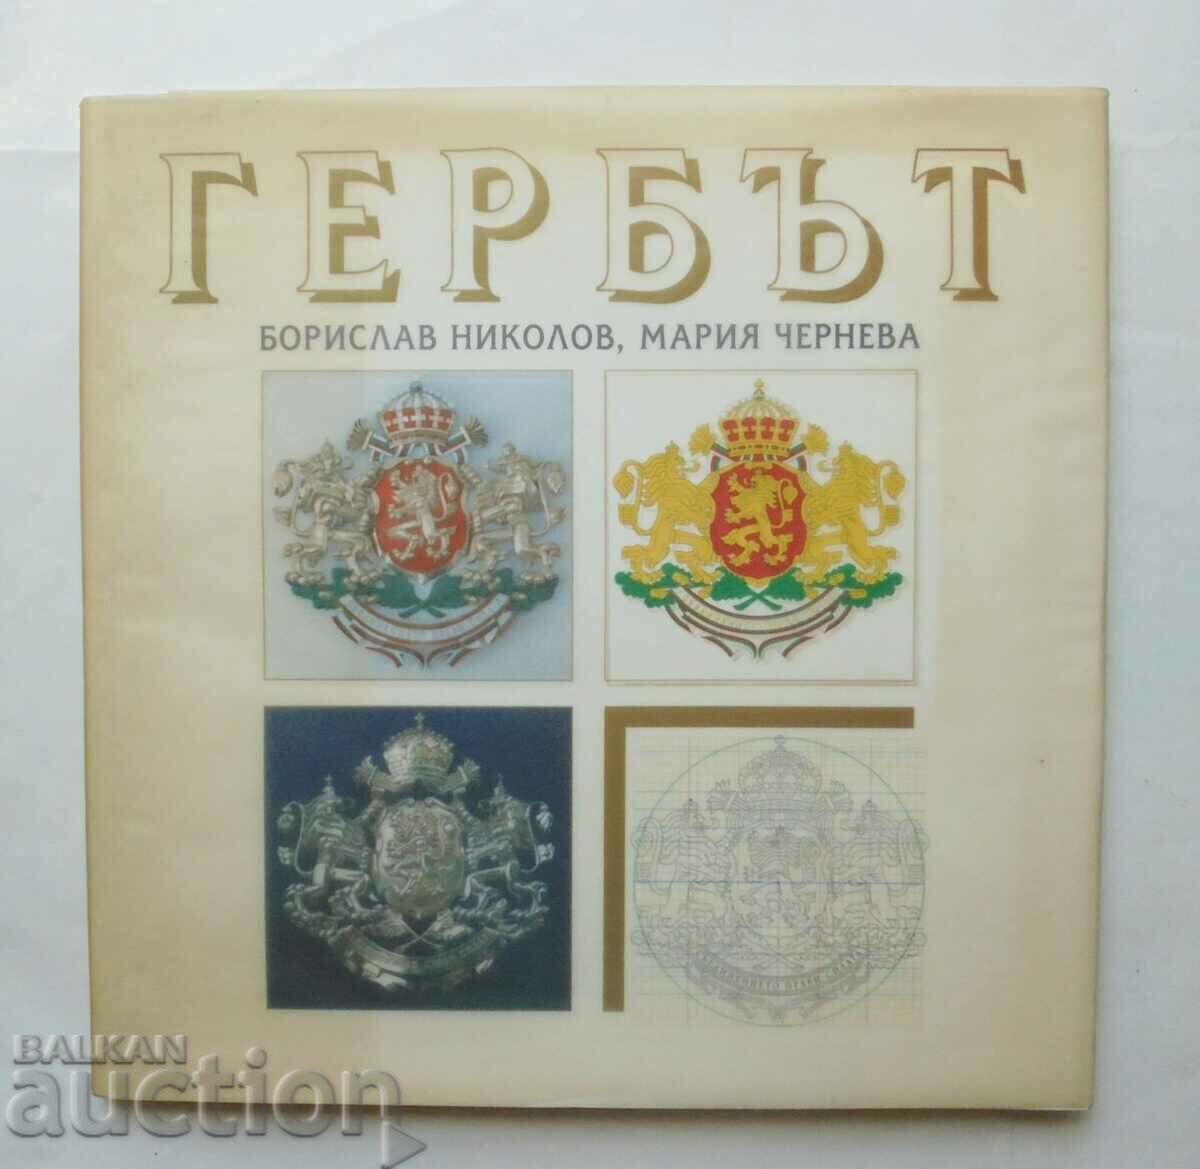 Coat of arms - Borislav Nikolov, Maria Cherneva 2000